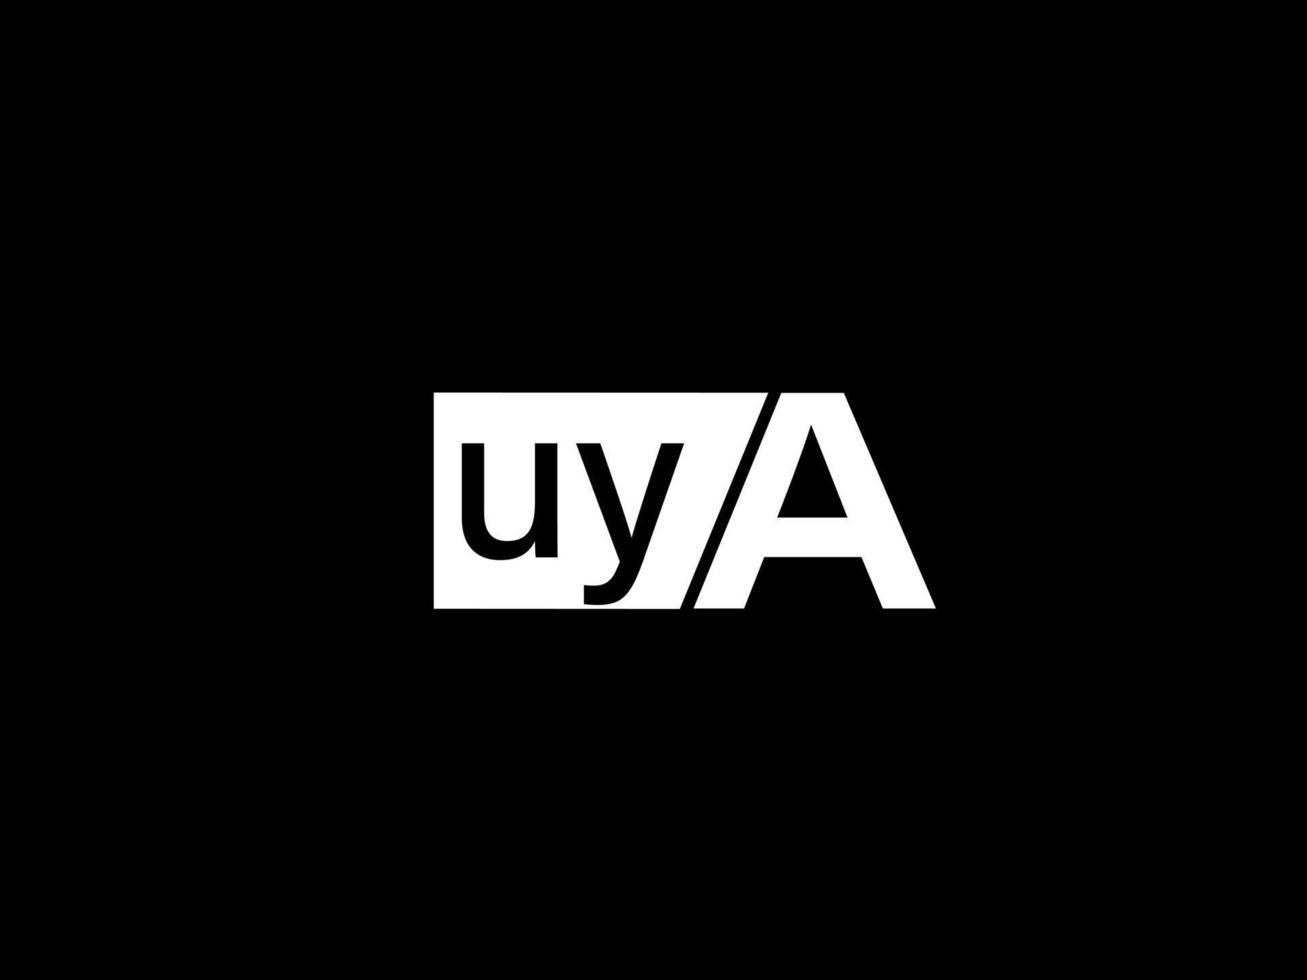 Uya-Logo und Grafikdesign Vektorgrafiken, Symbole isoliert auf schwarzem Hintergrund vektor